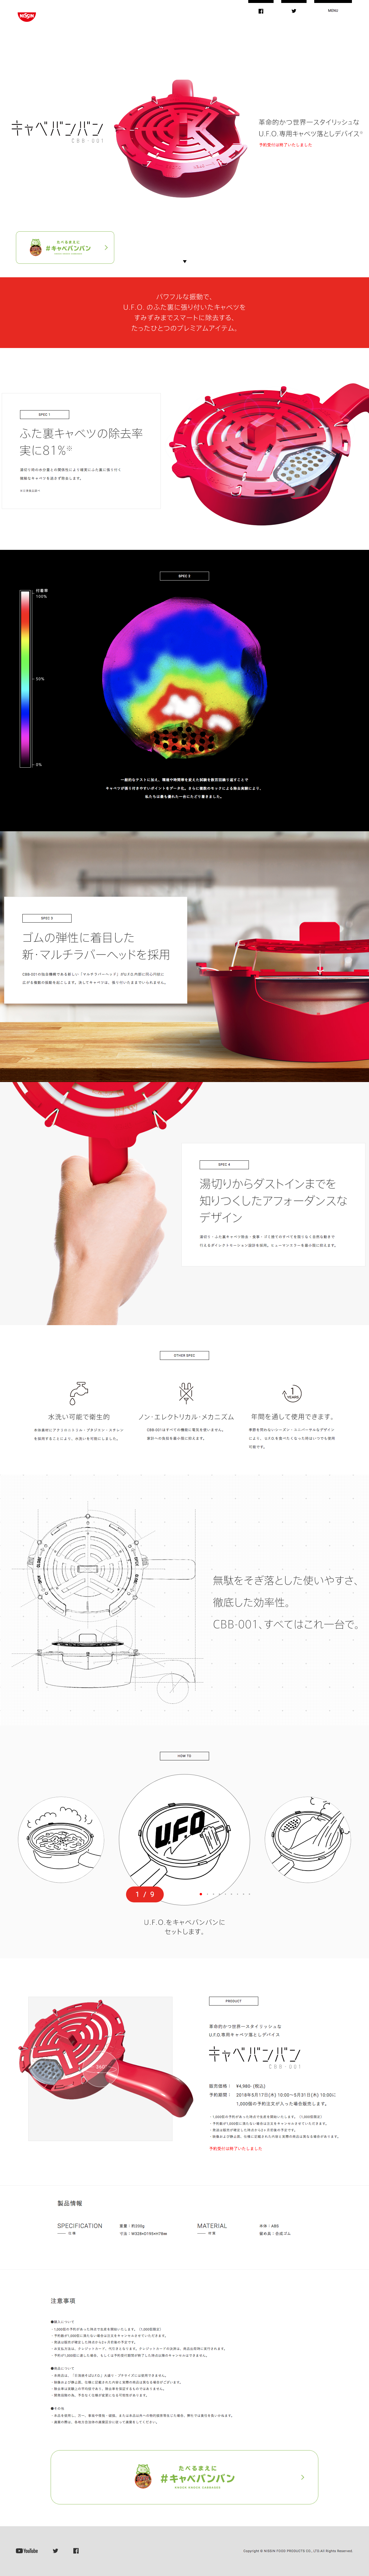 日清U.F.O.泡面工具Kyabebanban CBB-001网站设计